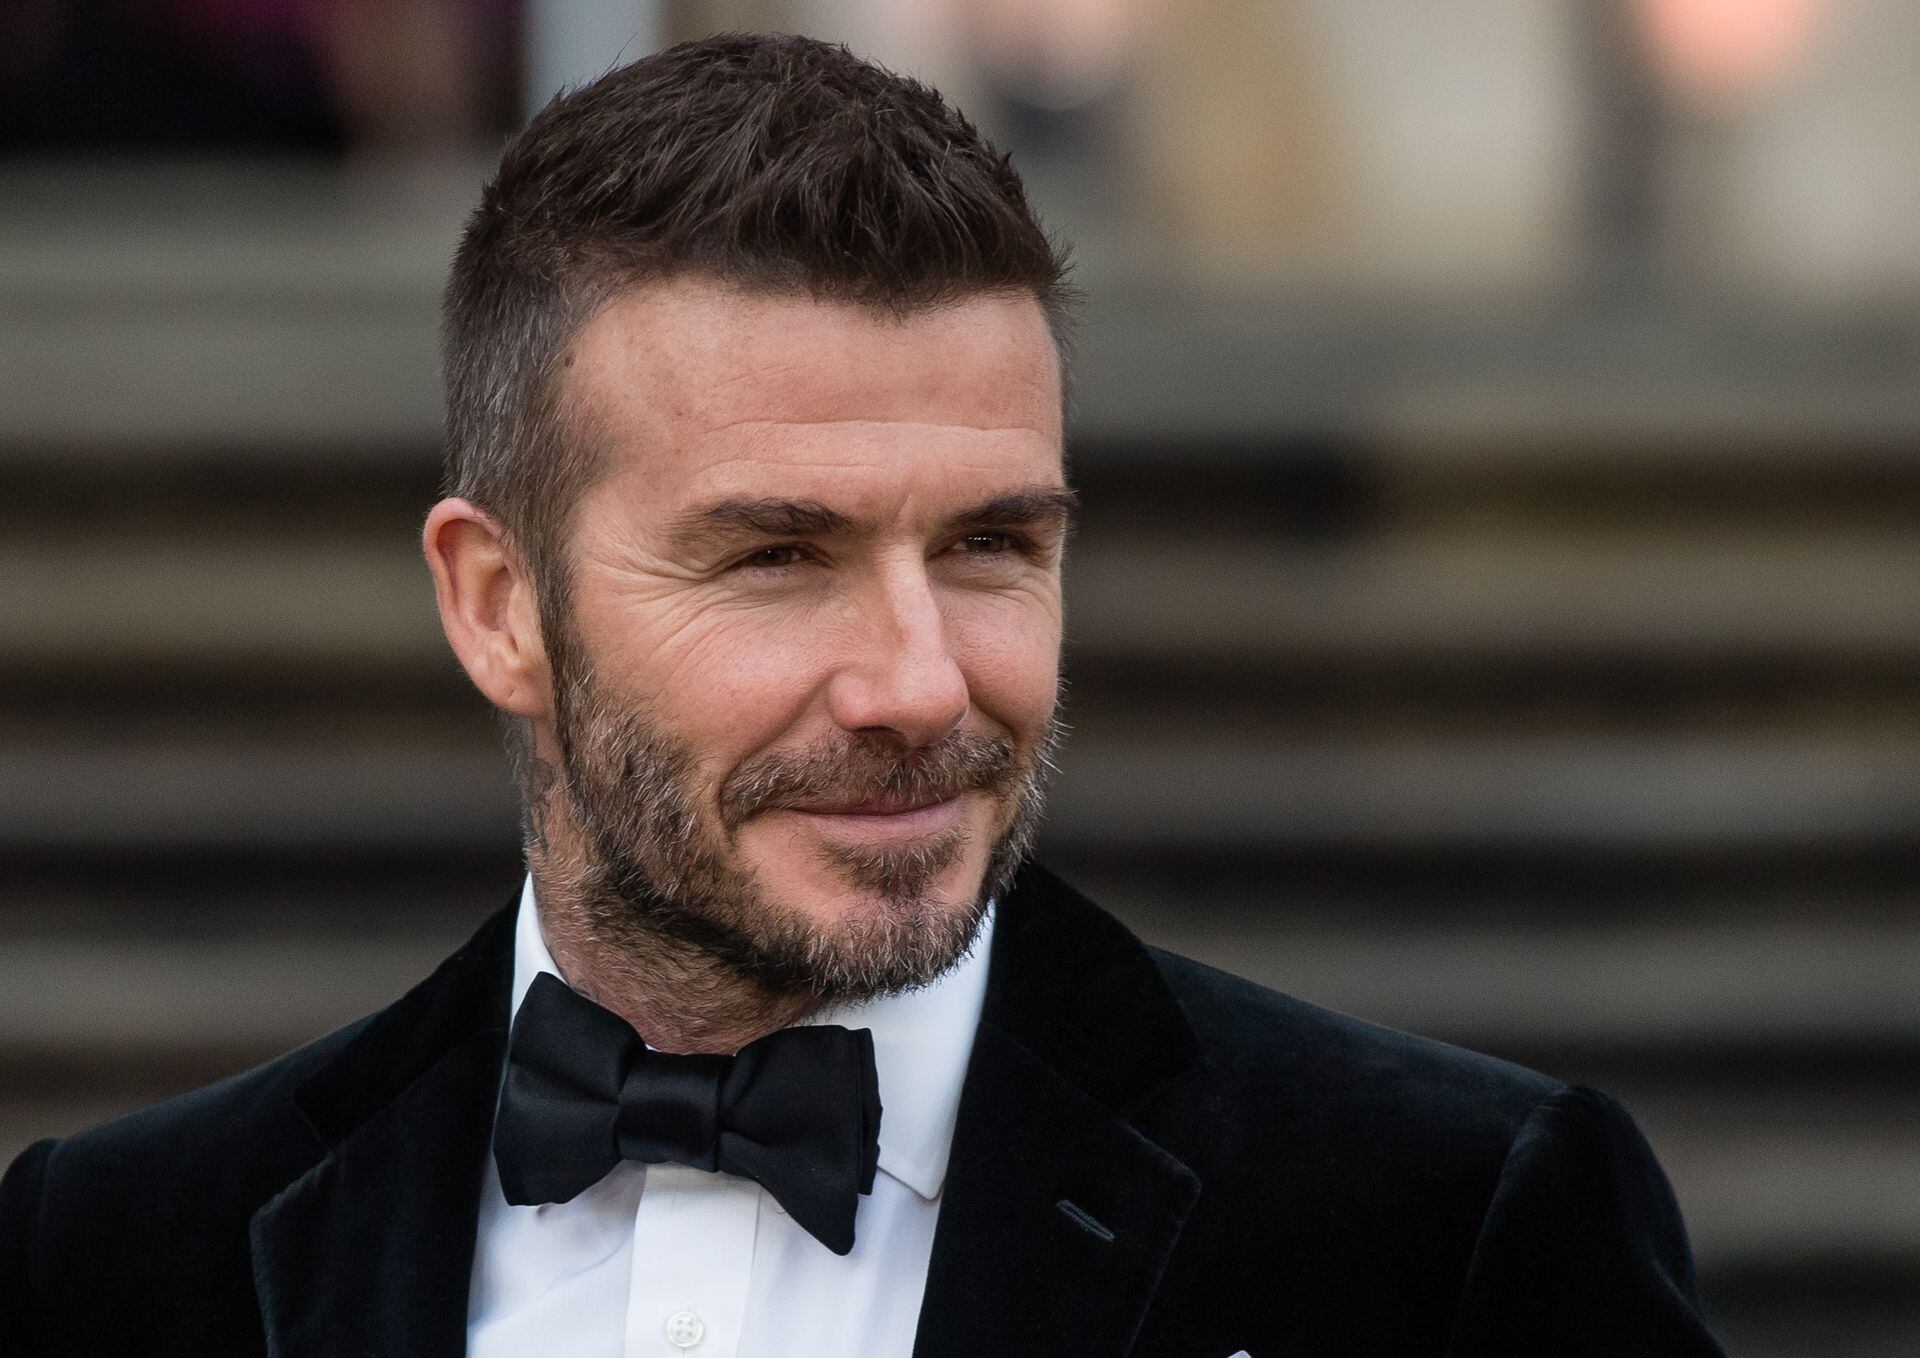 Nicola Peltz marries Brooklyn Beckham in a decadent Valentino gown